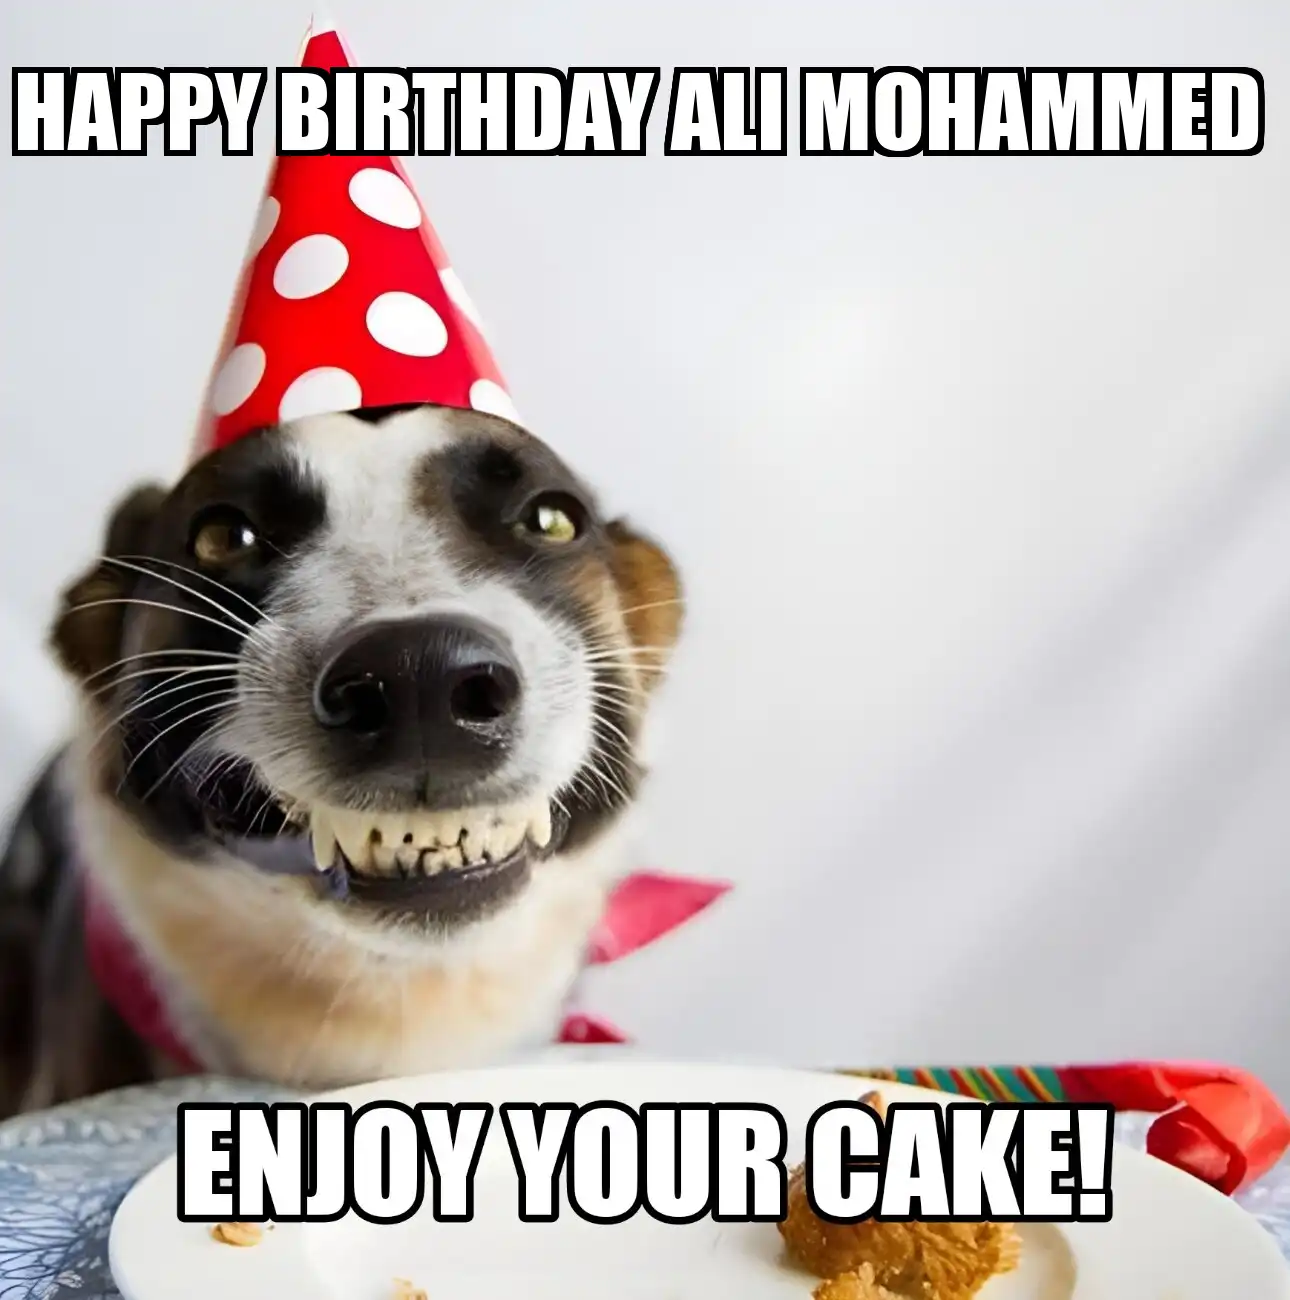 Happy Birthday Ali Mohammed Enjoy Your Cake Dog Meme